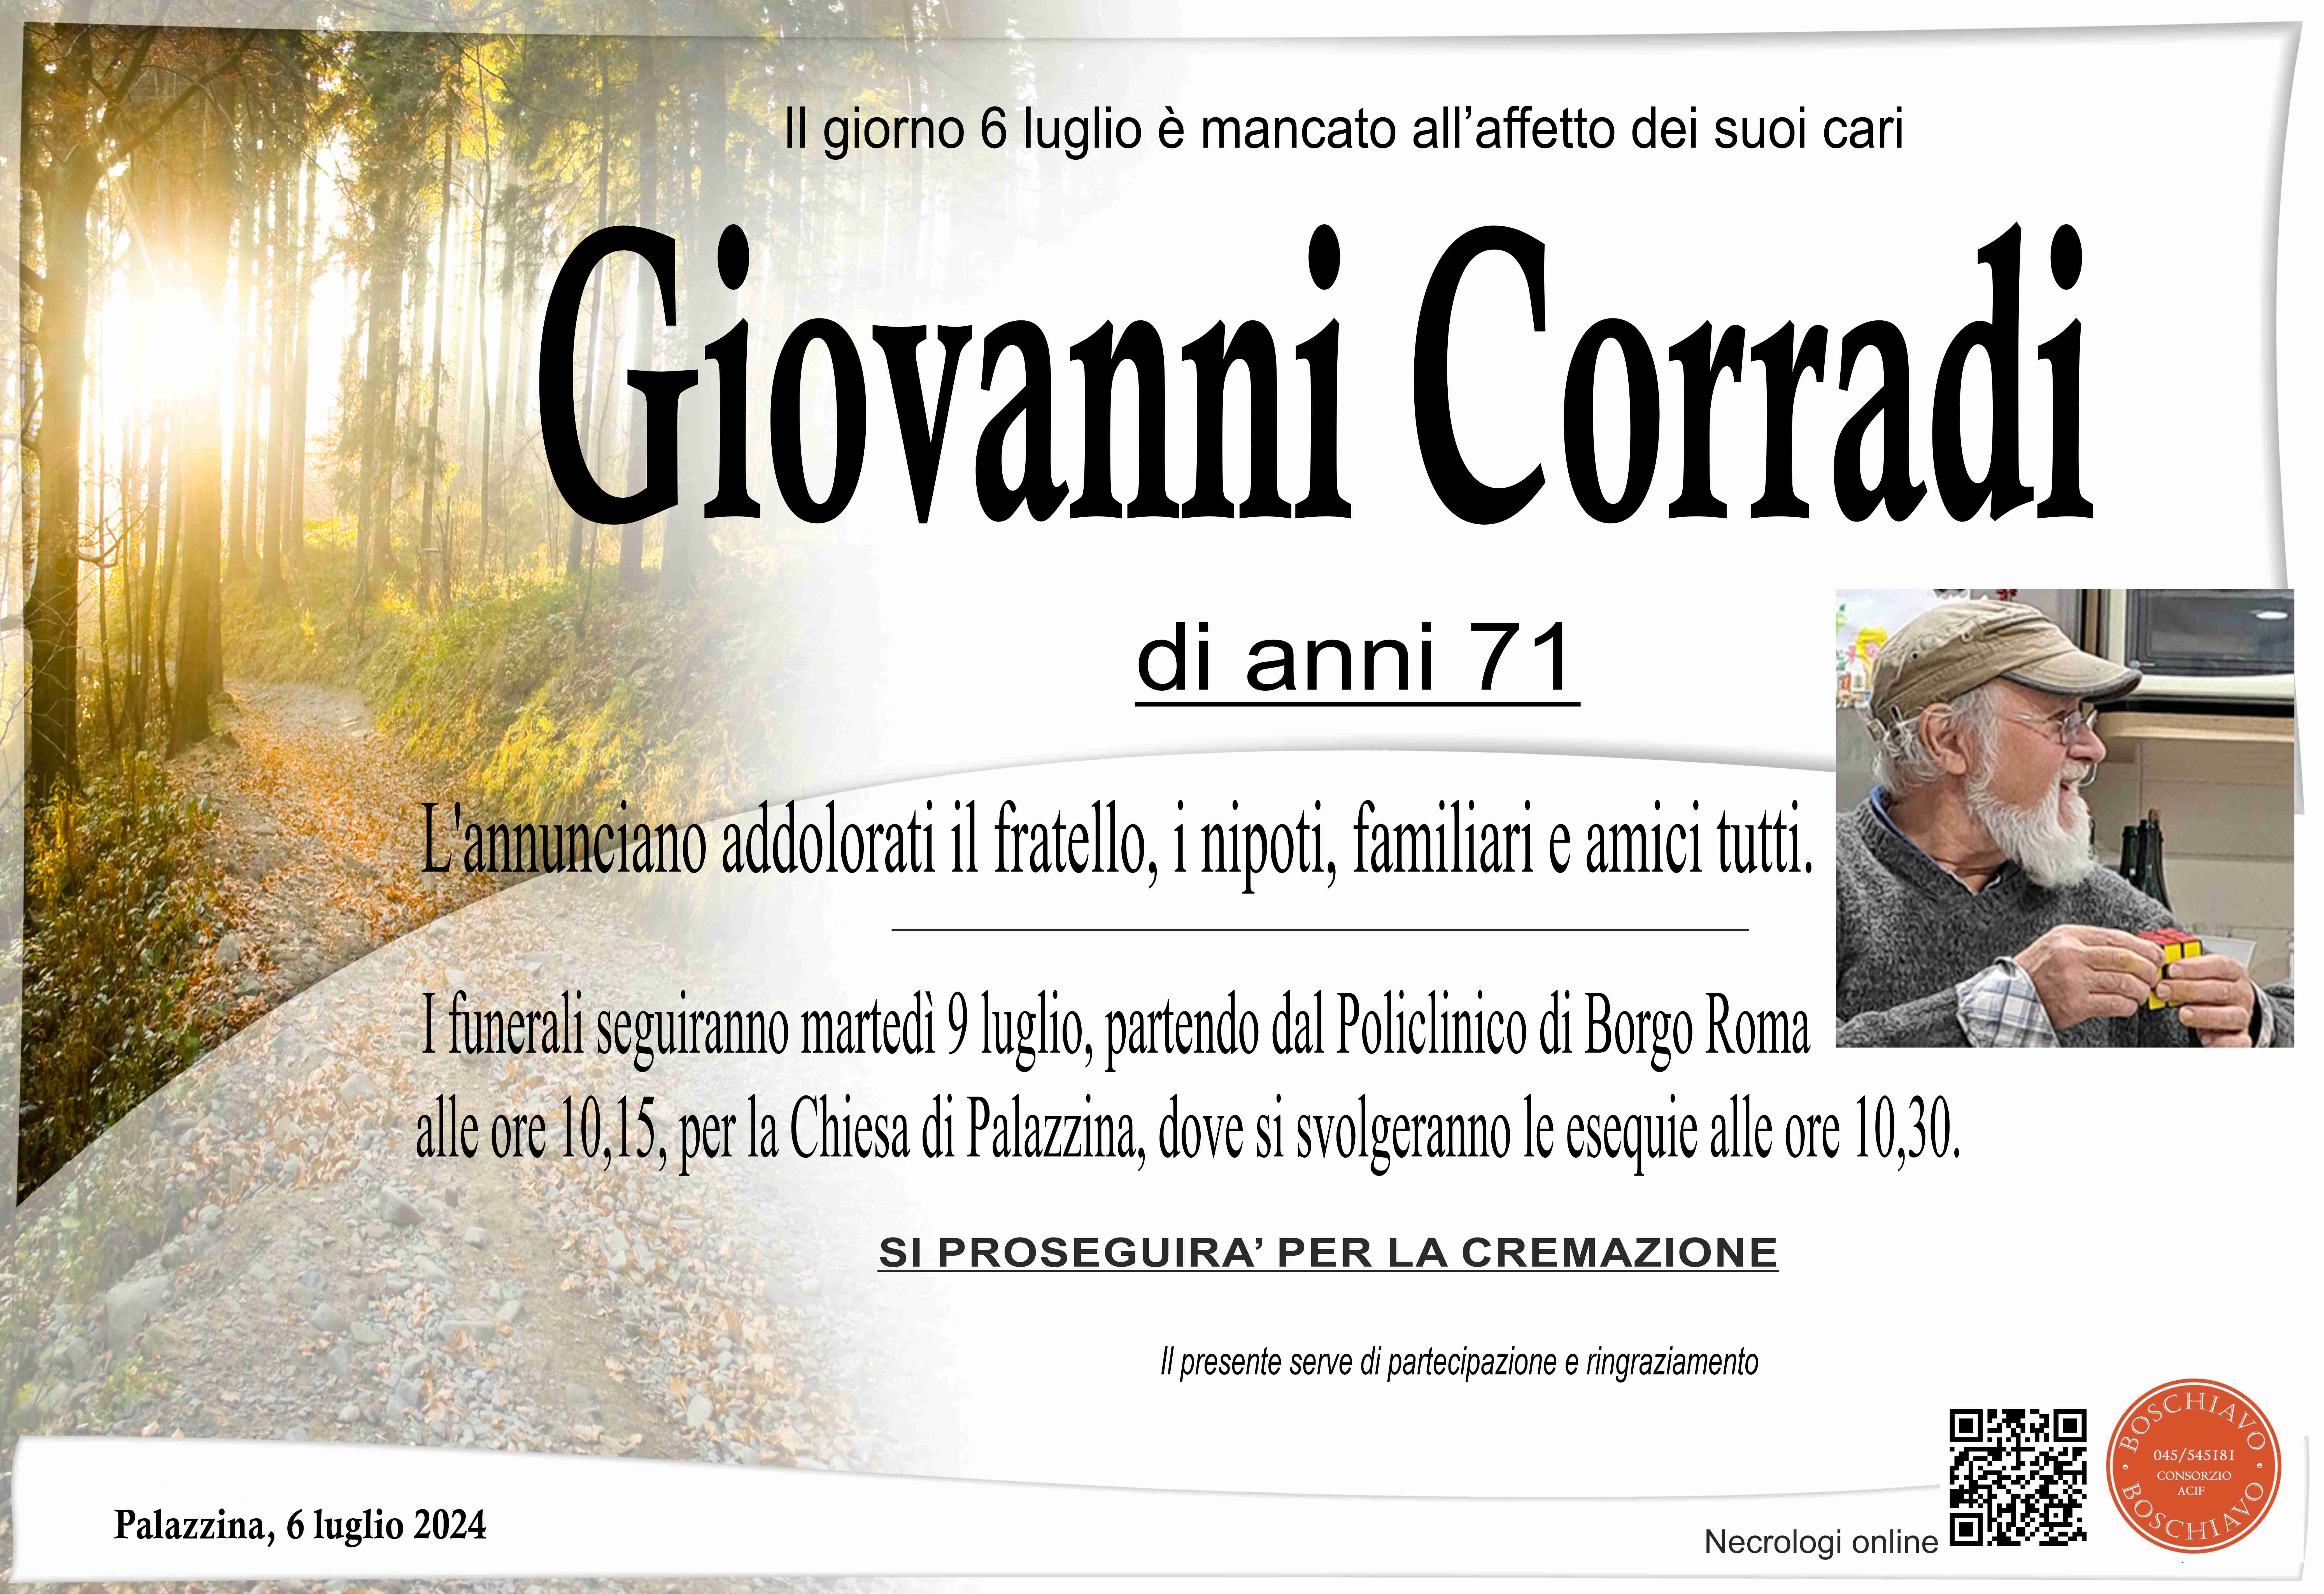 Corradi Giovanni